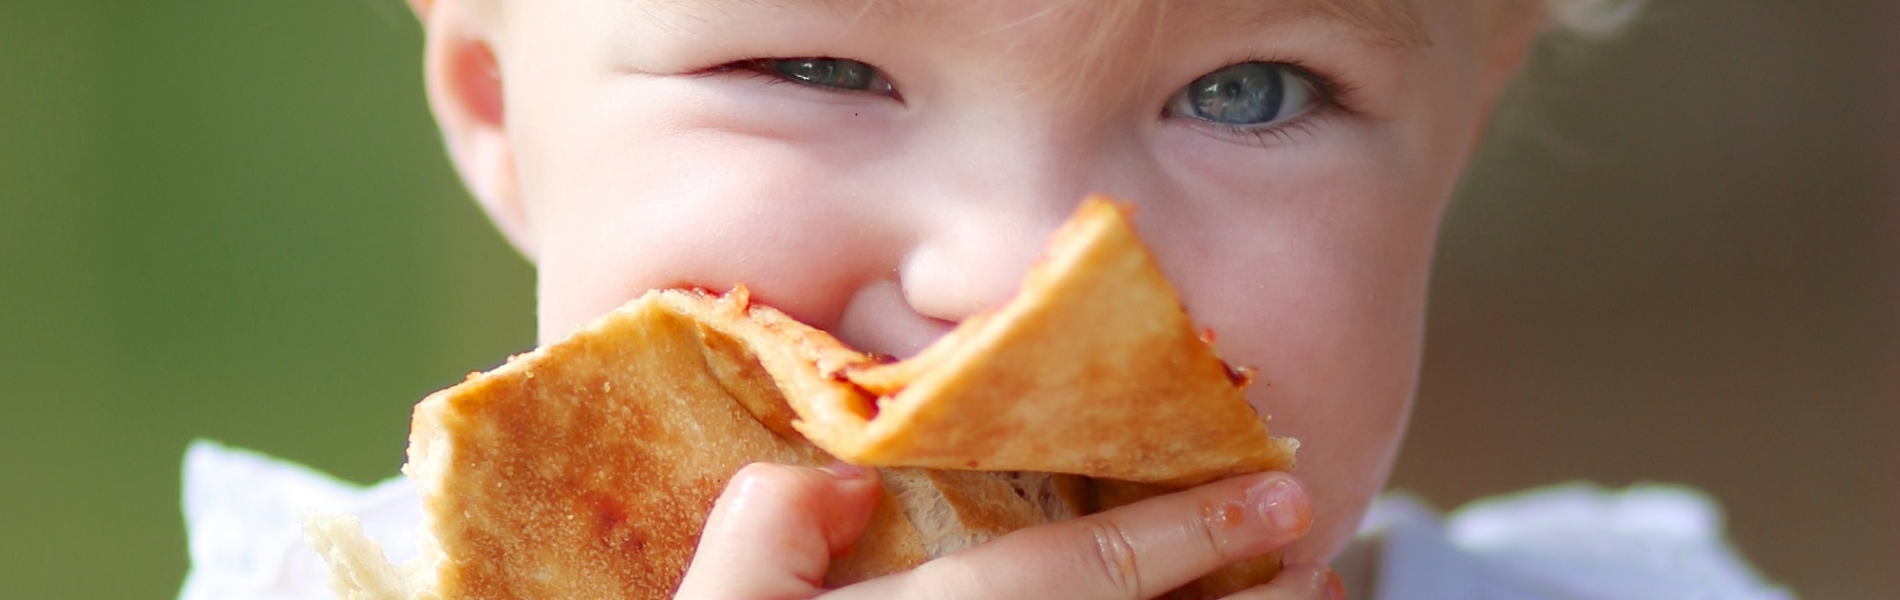 די לפיצה ולחביתה: טיפים לאכילה בריאה אצל ילדים